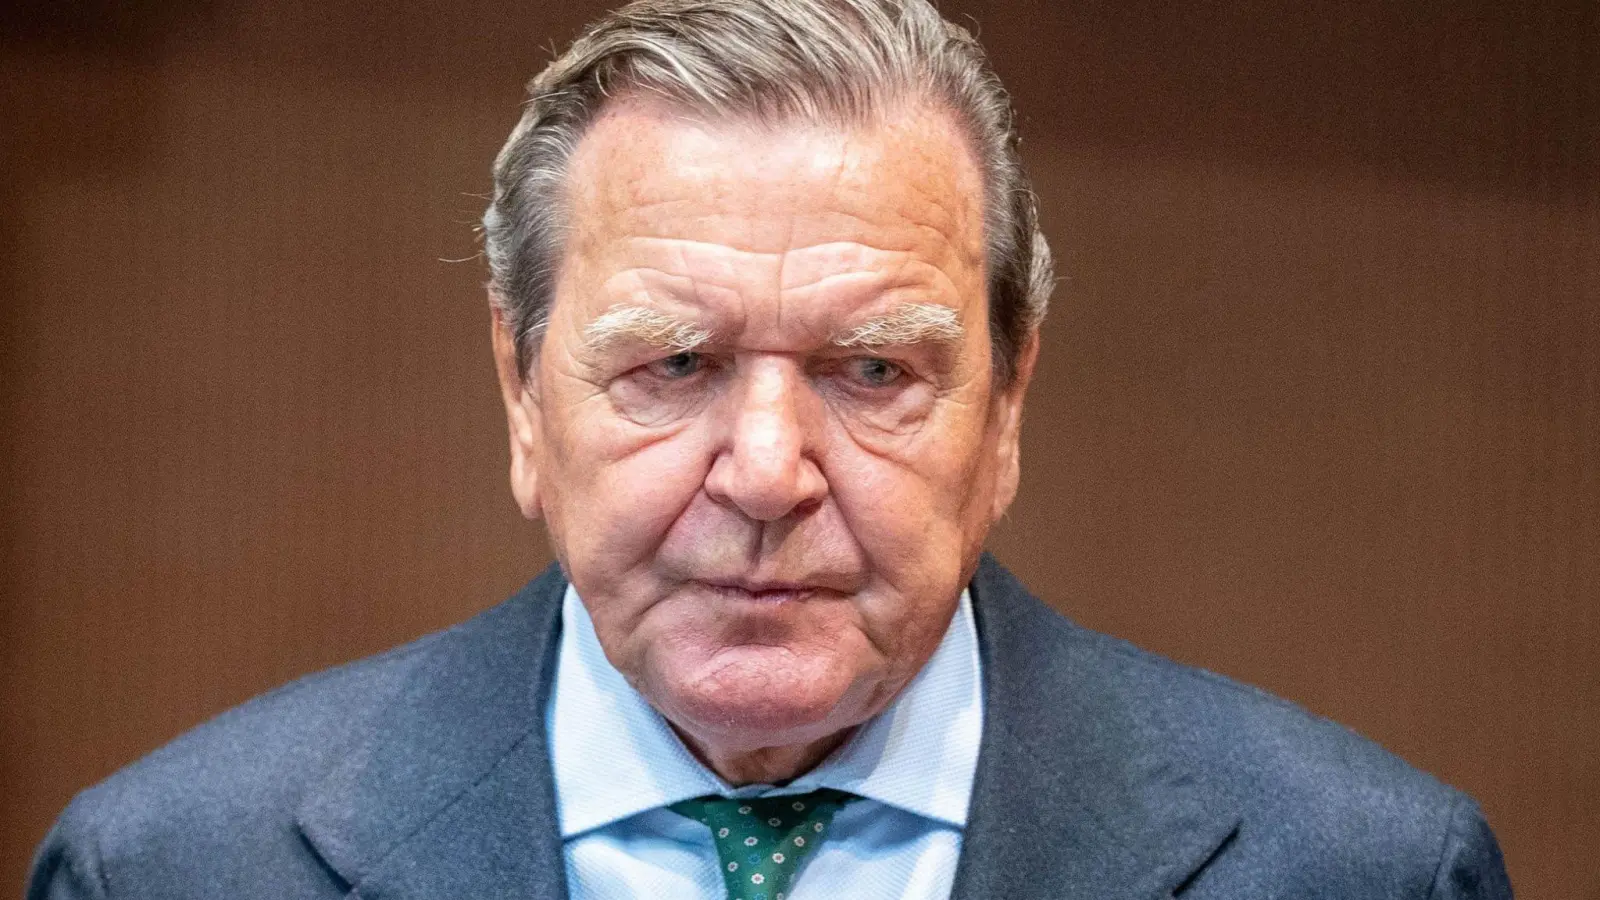 Altkanzler Gerhard Schröder steht wegen seiner Russland-Nähe in der Kritik. (Foto: Kay Nietfeld/dpa)